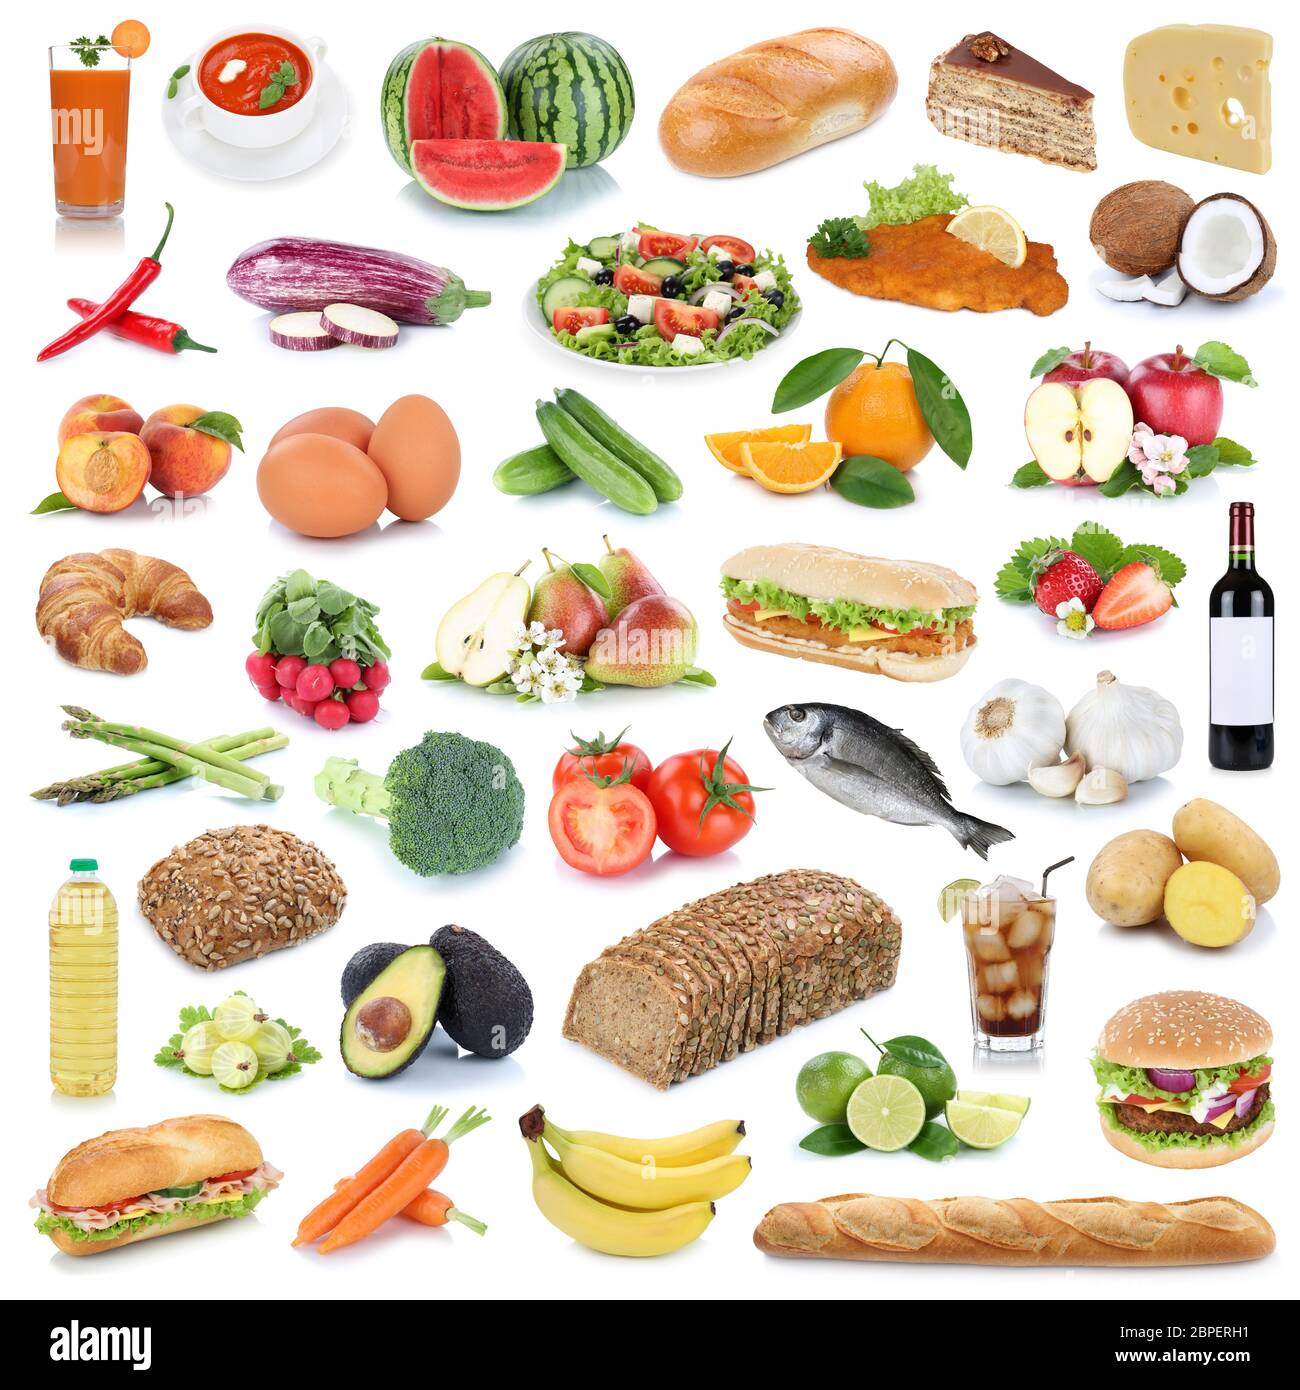 Essen Sammlung Hintergrund gesunde Ernährung Obst und Gemüse Früchte Lebensmittel Freisteller freigestellt isoliert Foto Stock